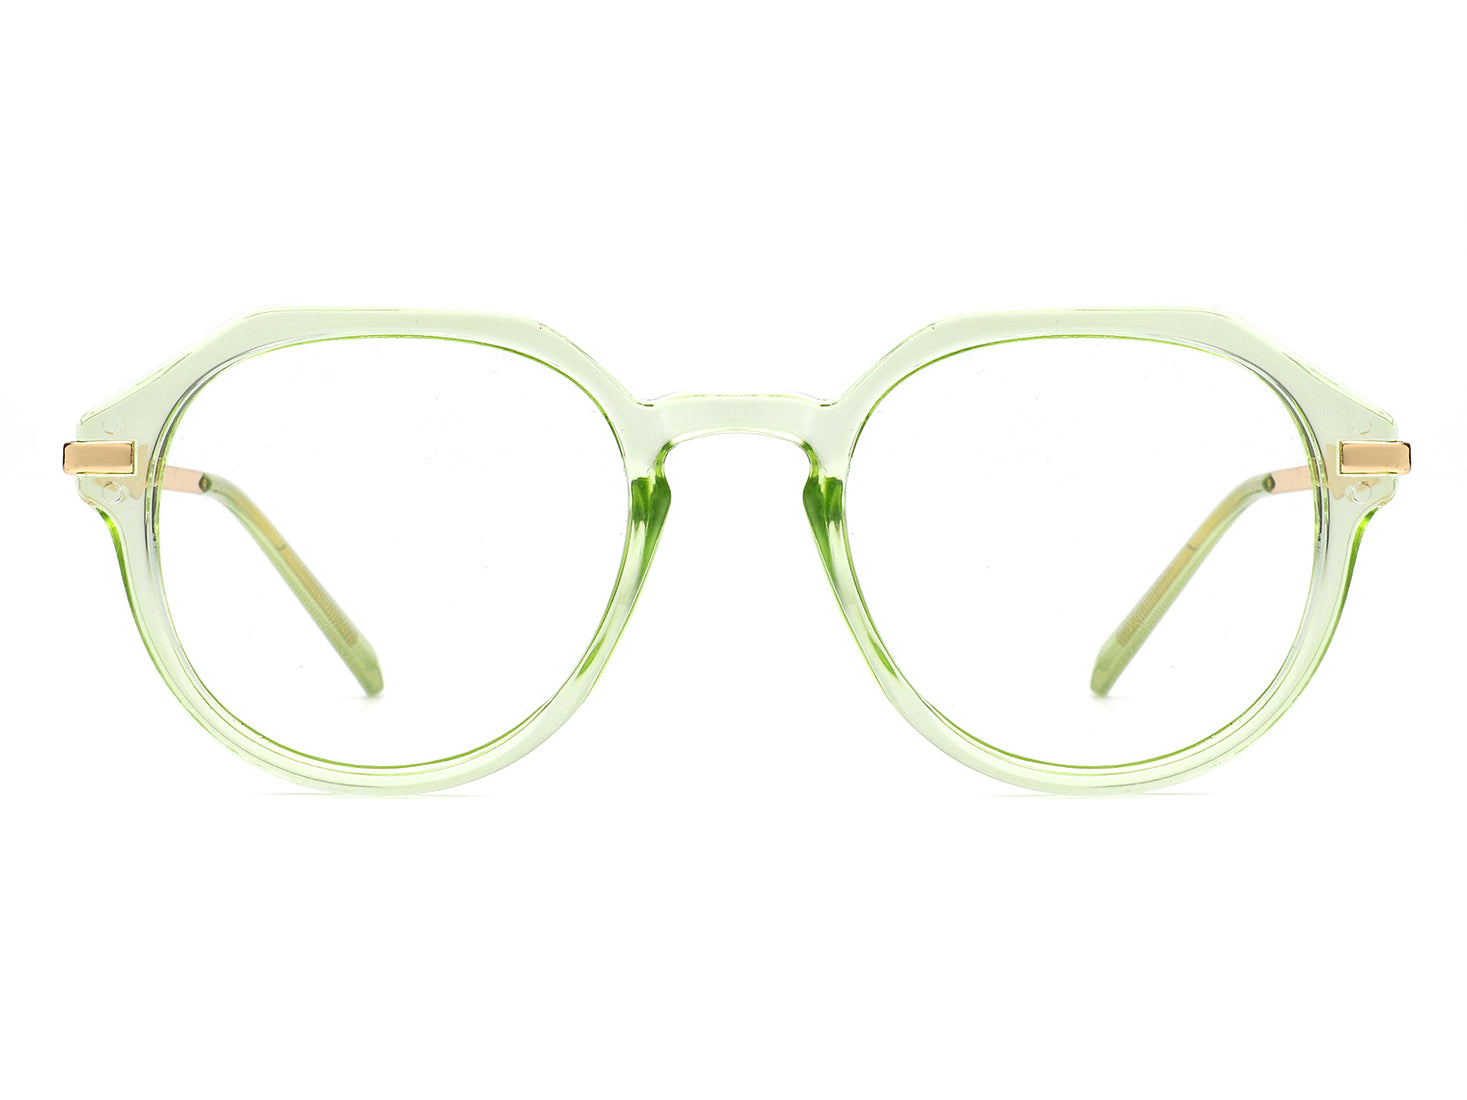 HBJ2012 - Round Geometric Fashion Blue Light Blocker Glasses